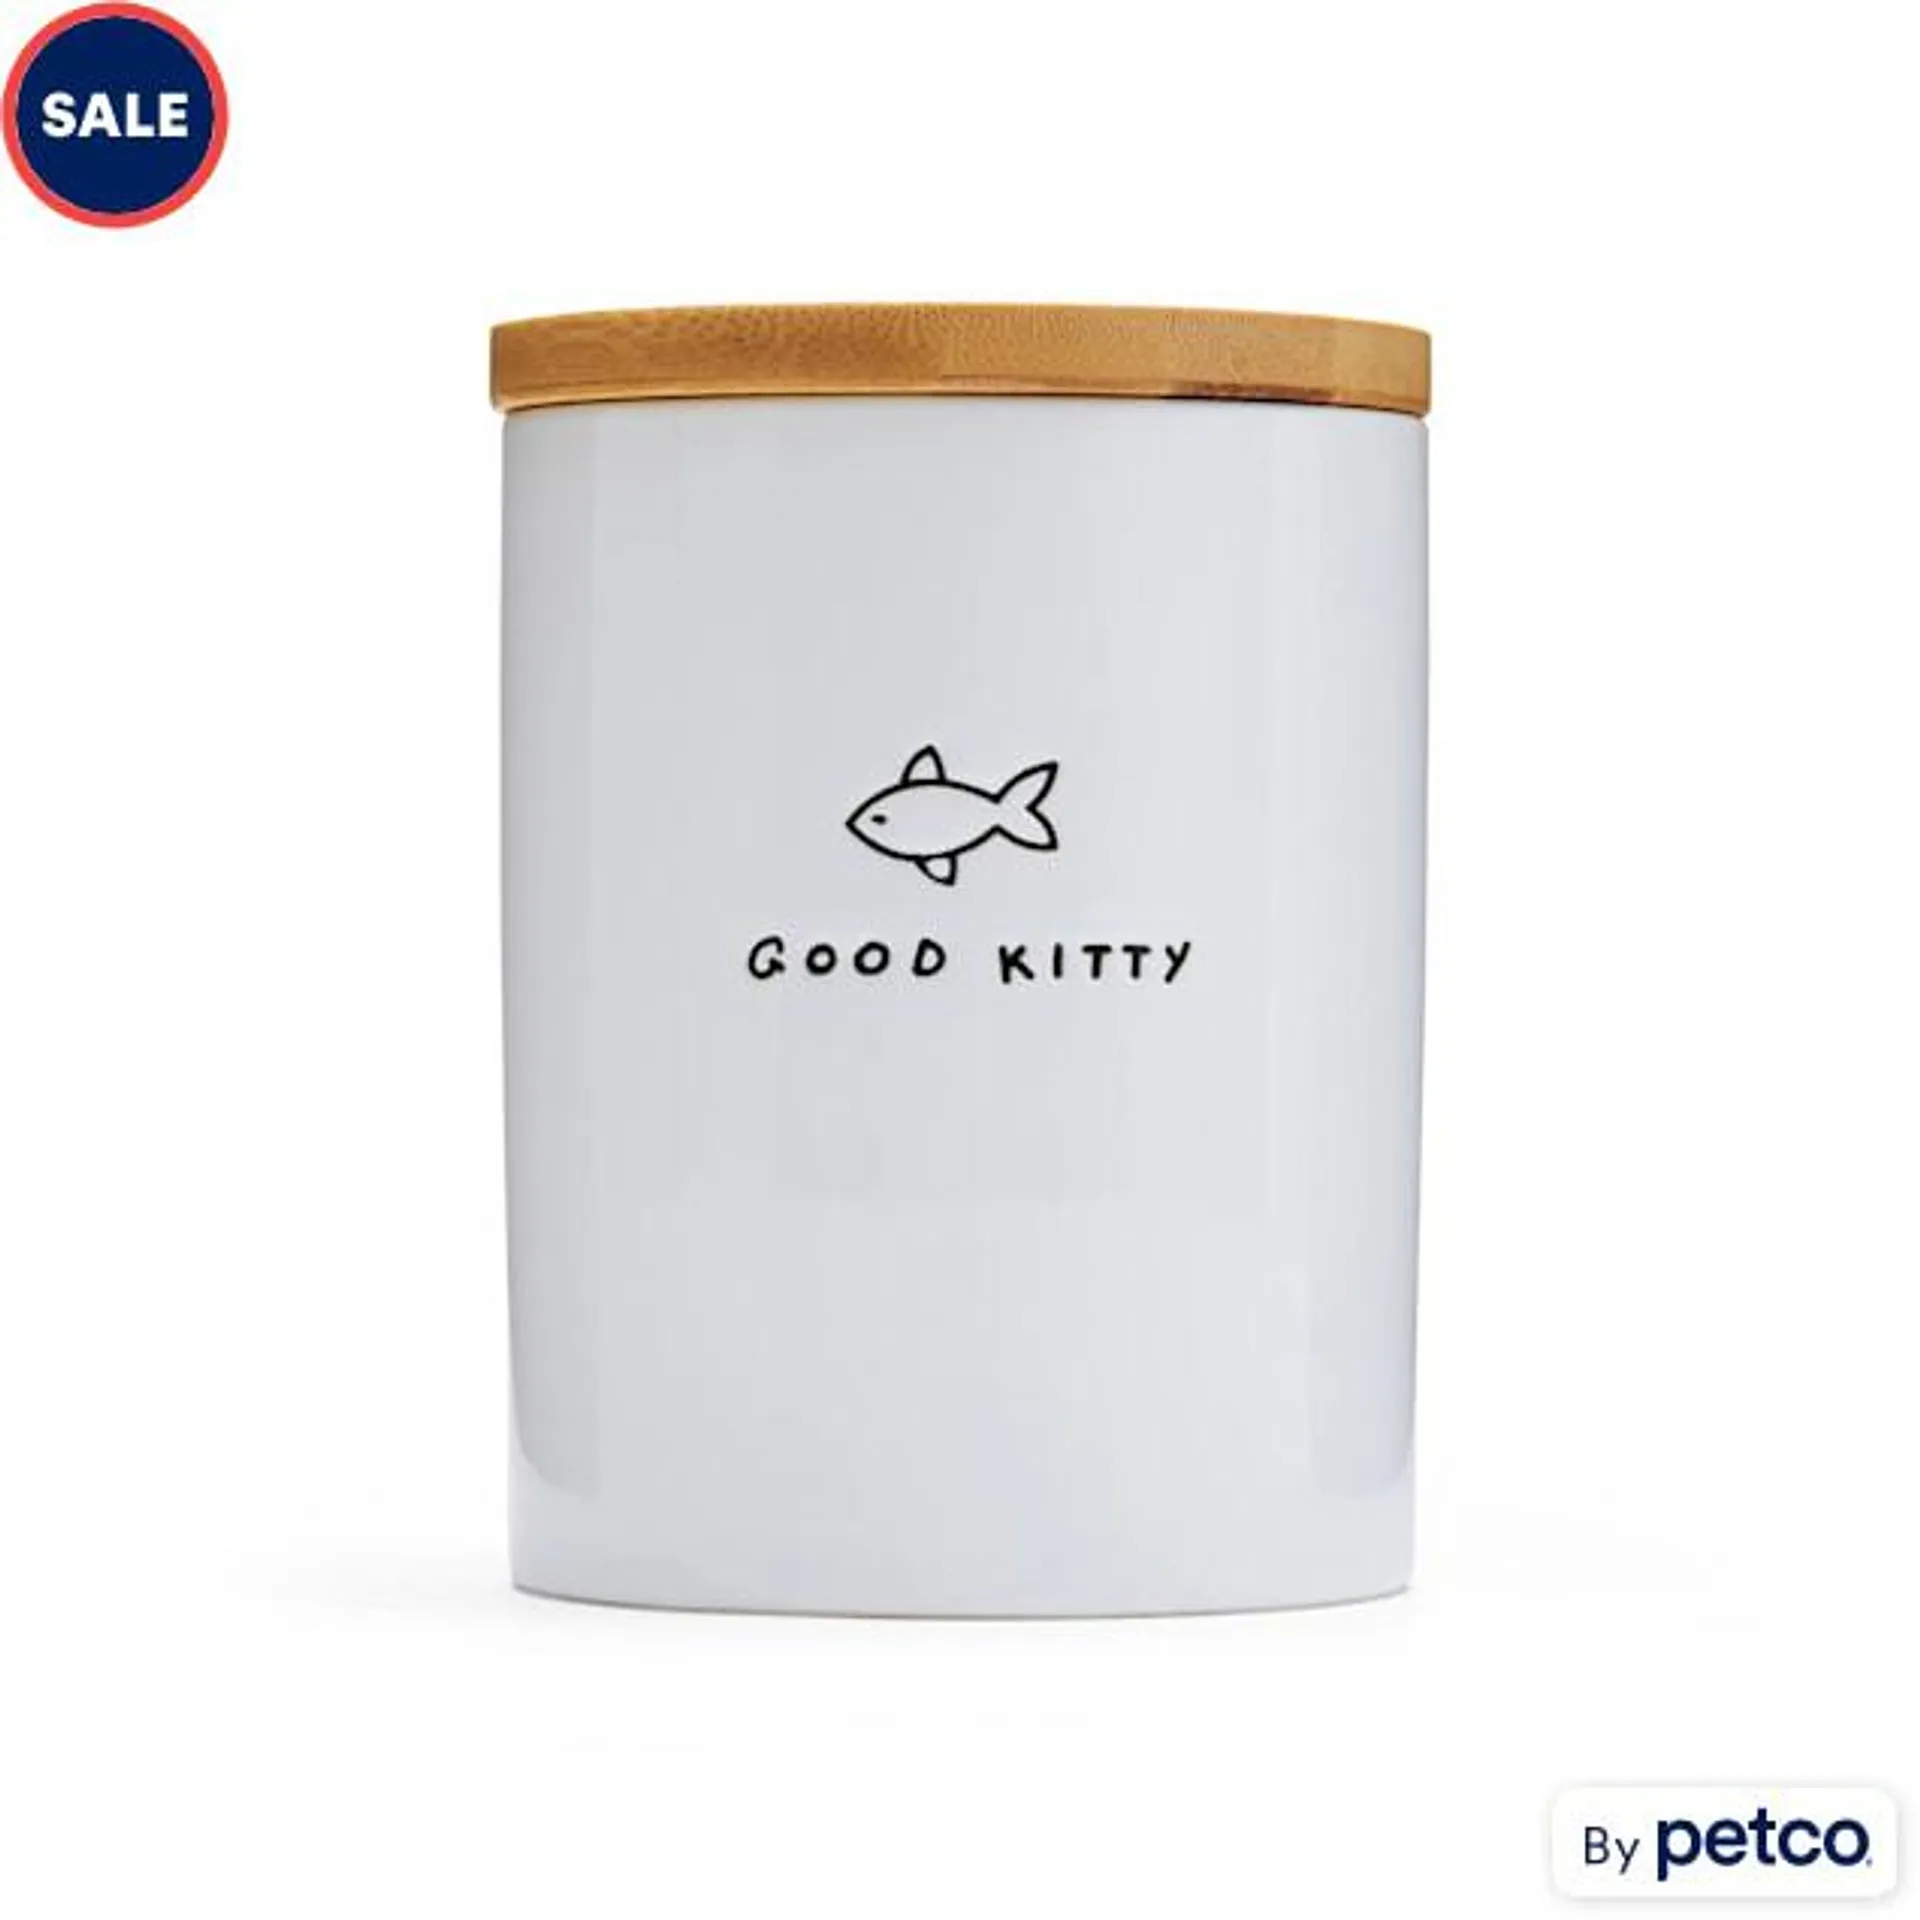 EveryYay Goody-Goody Good Kitty Ceramic Cat Treat Jar